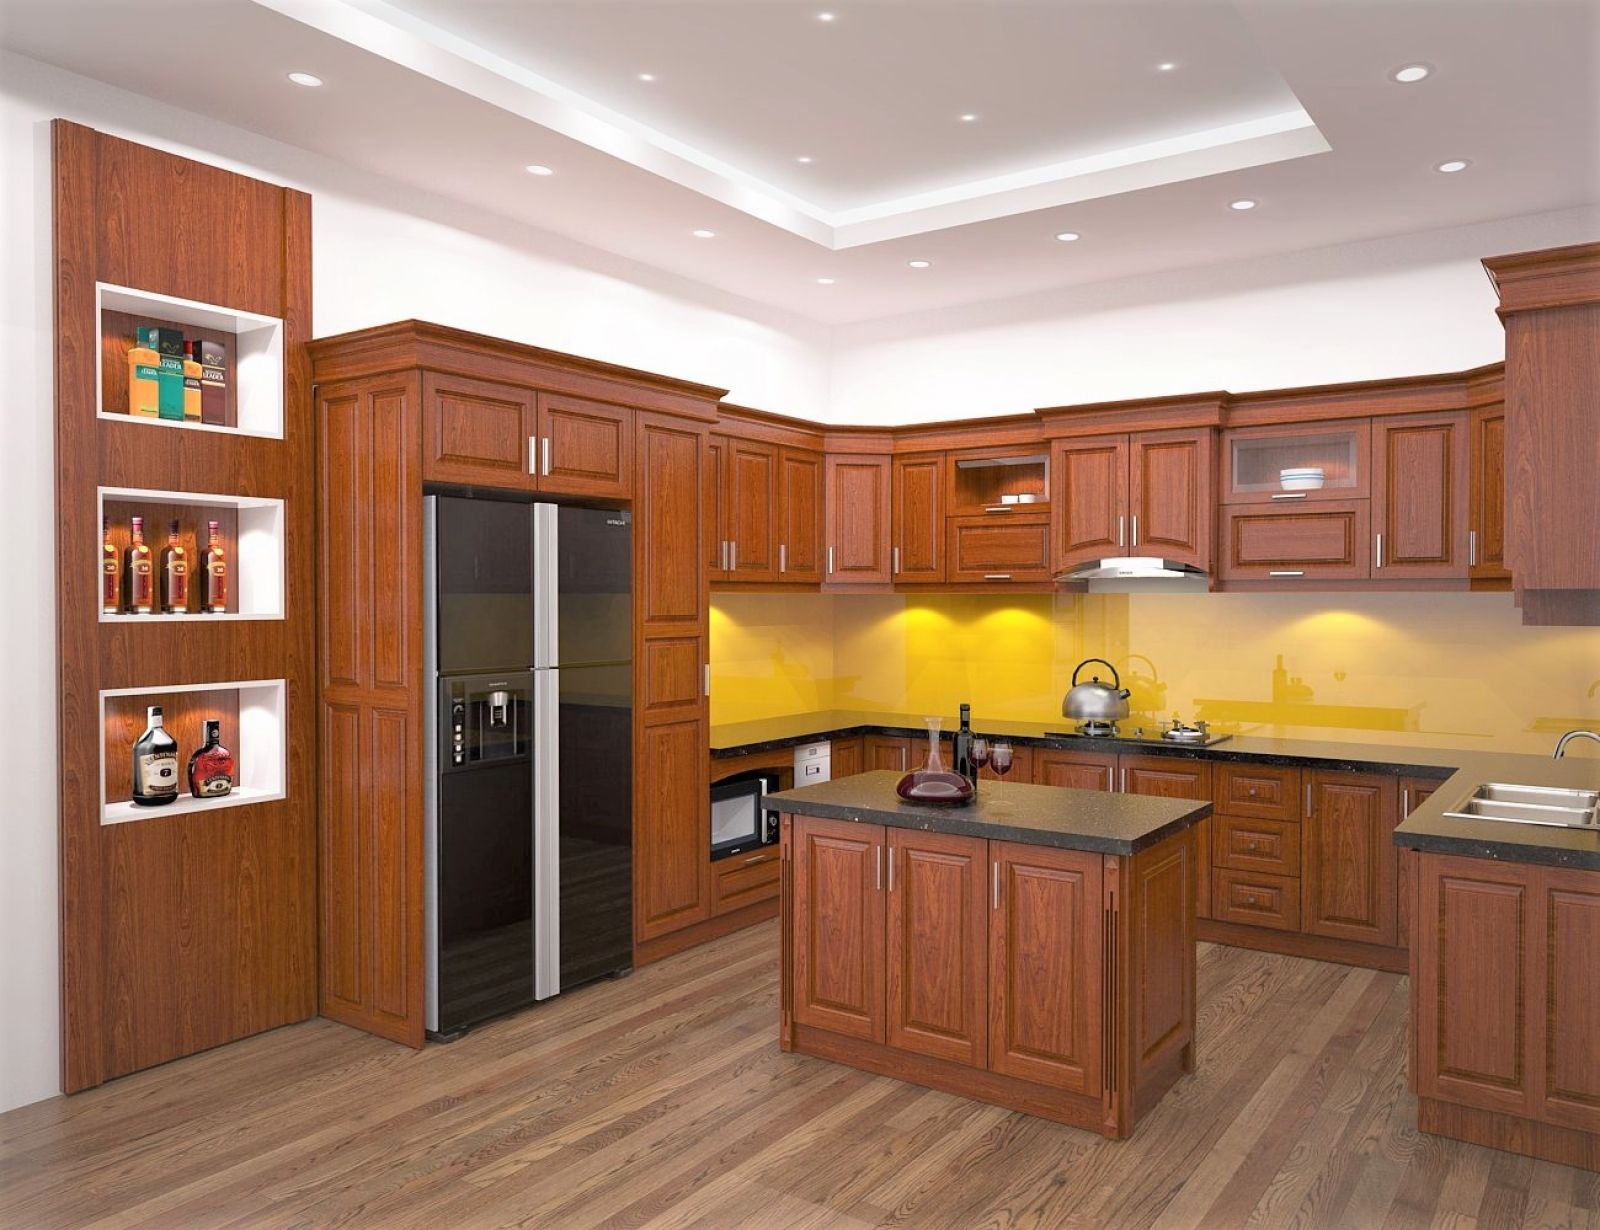 Tủ bếp theo phong cách hiện đại được làm bằng gỗ Xoan